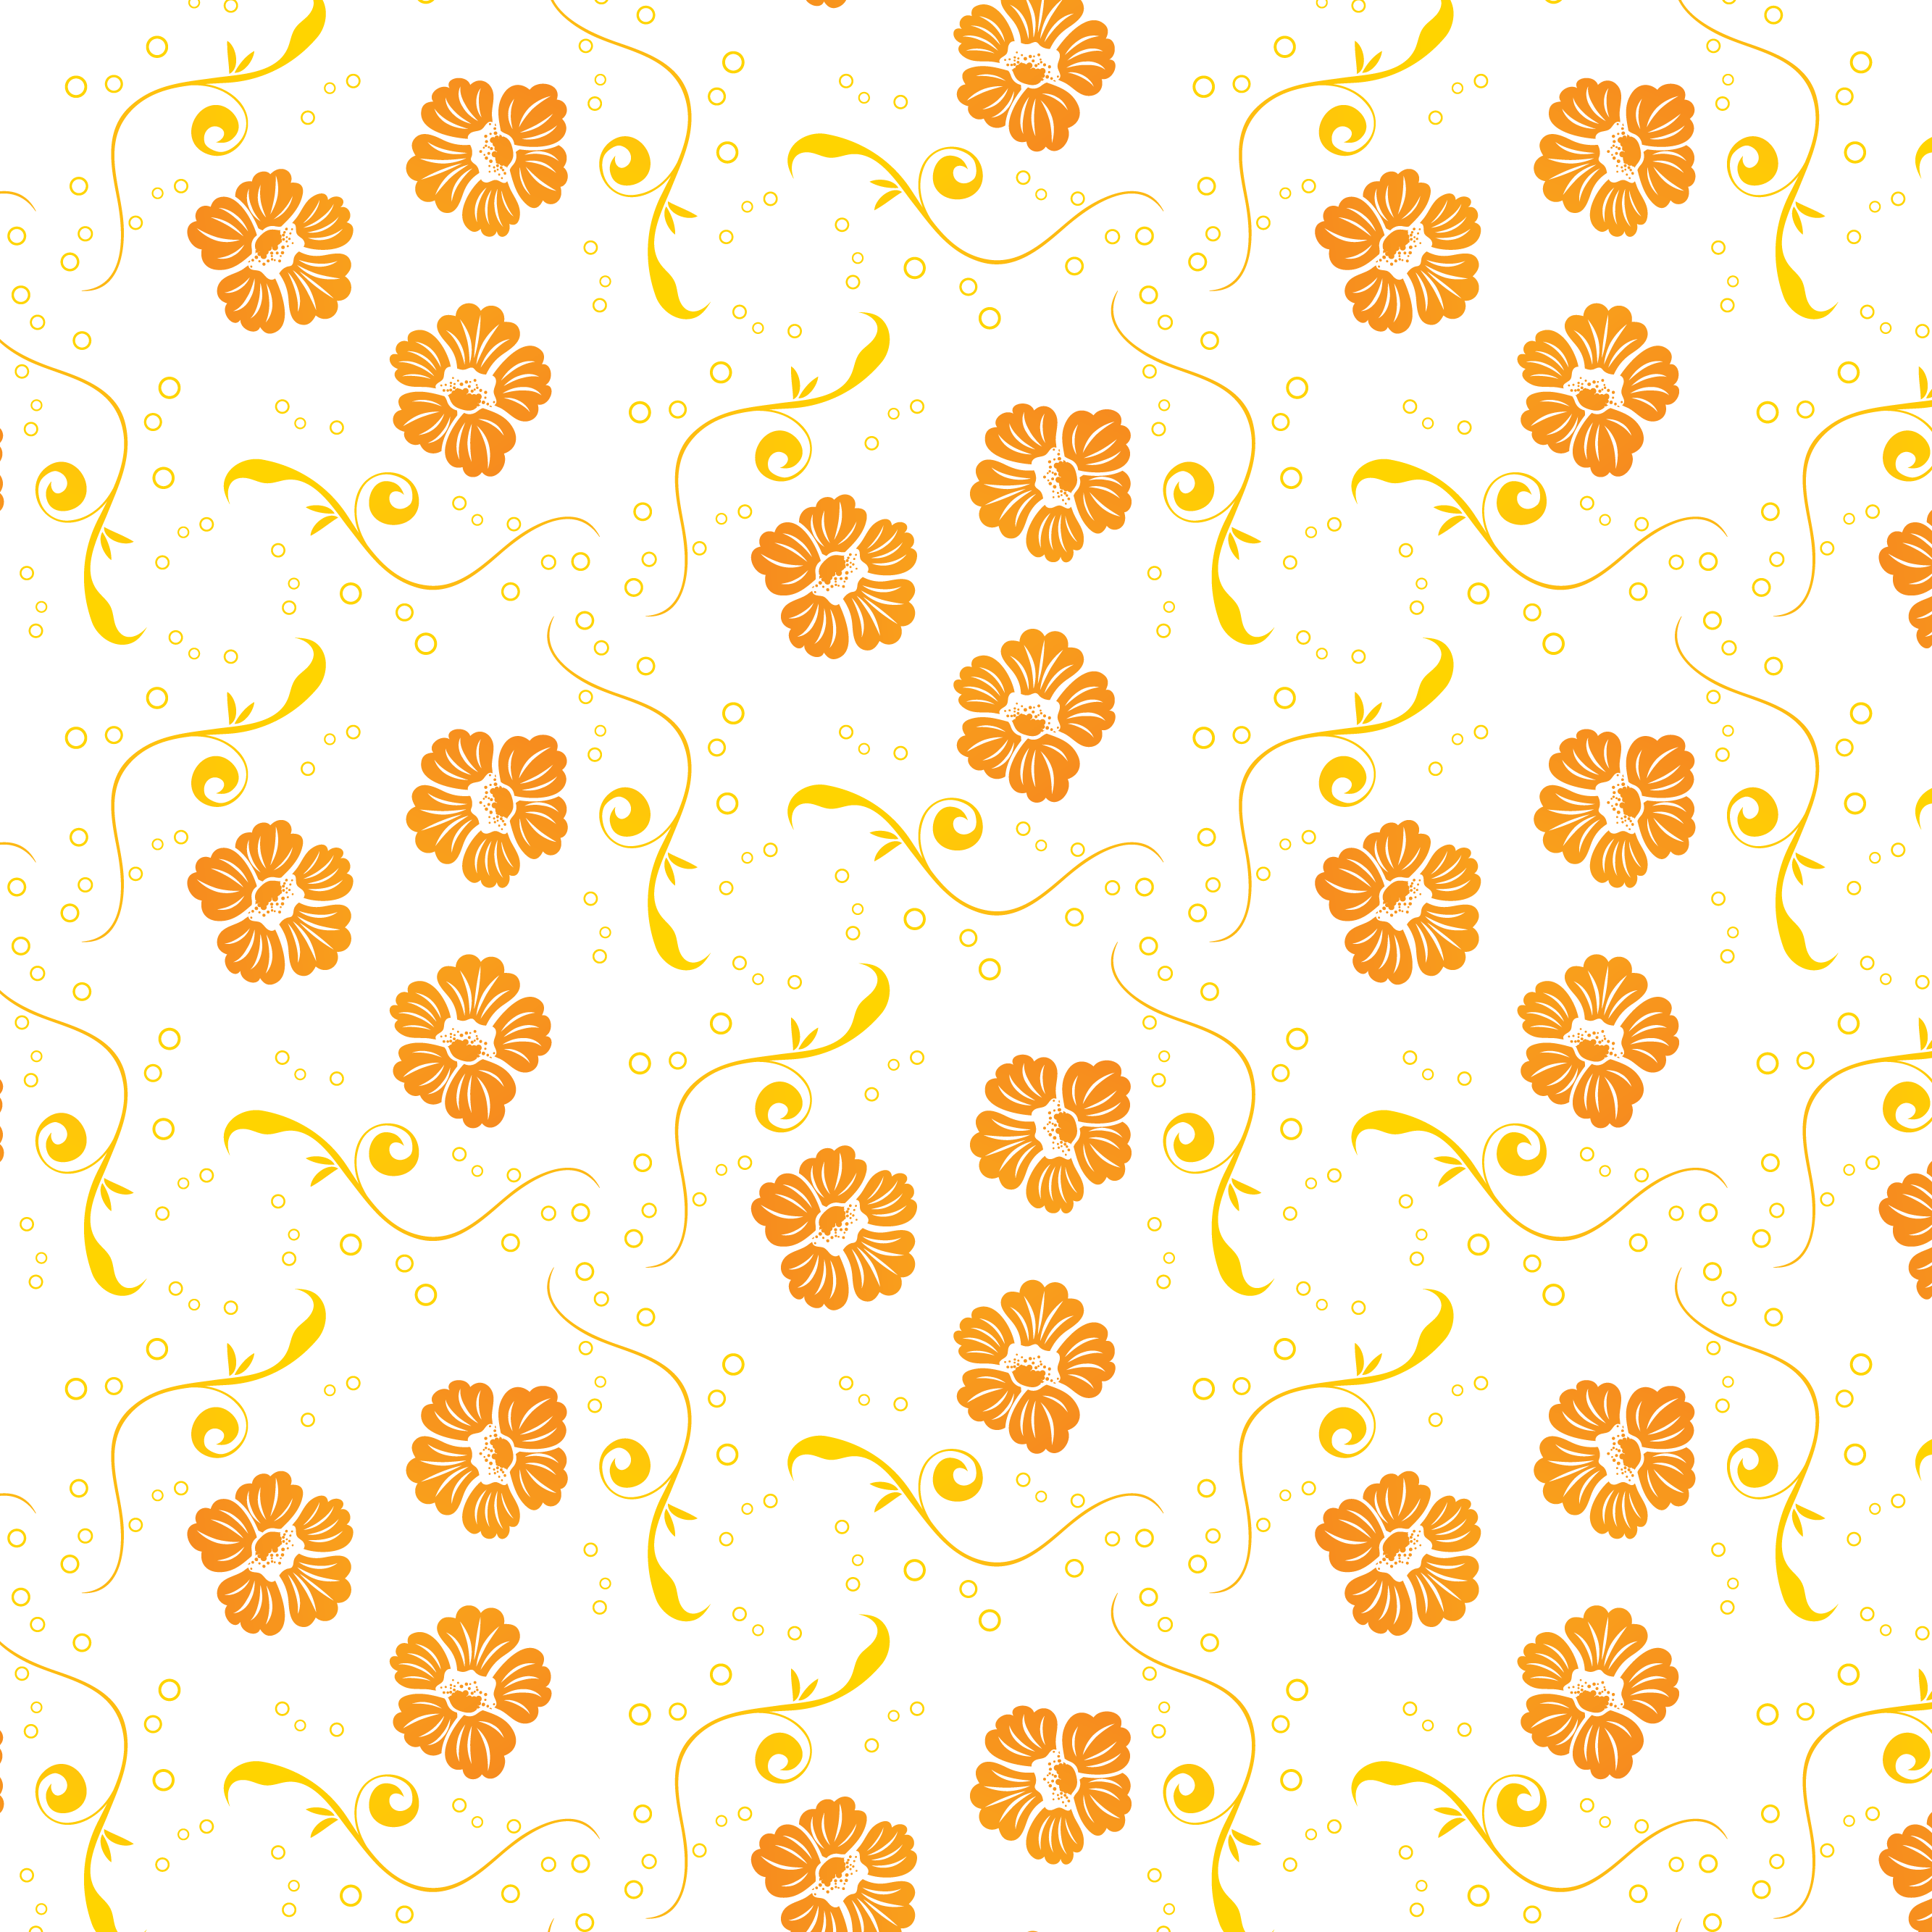 壁紙 背景イラスト 花の模様 柄 パターン No 006 オレンジ 葉